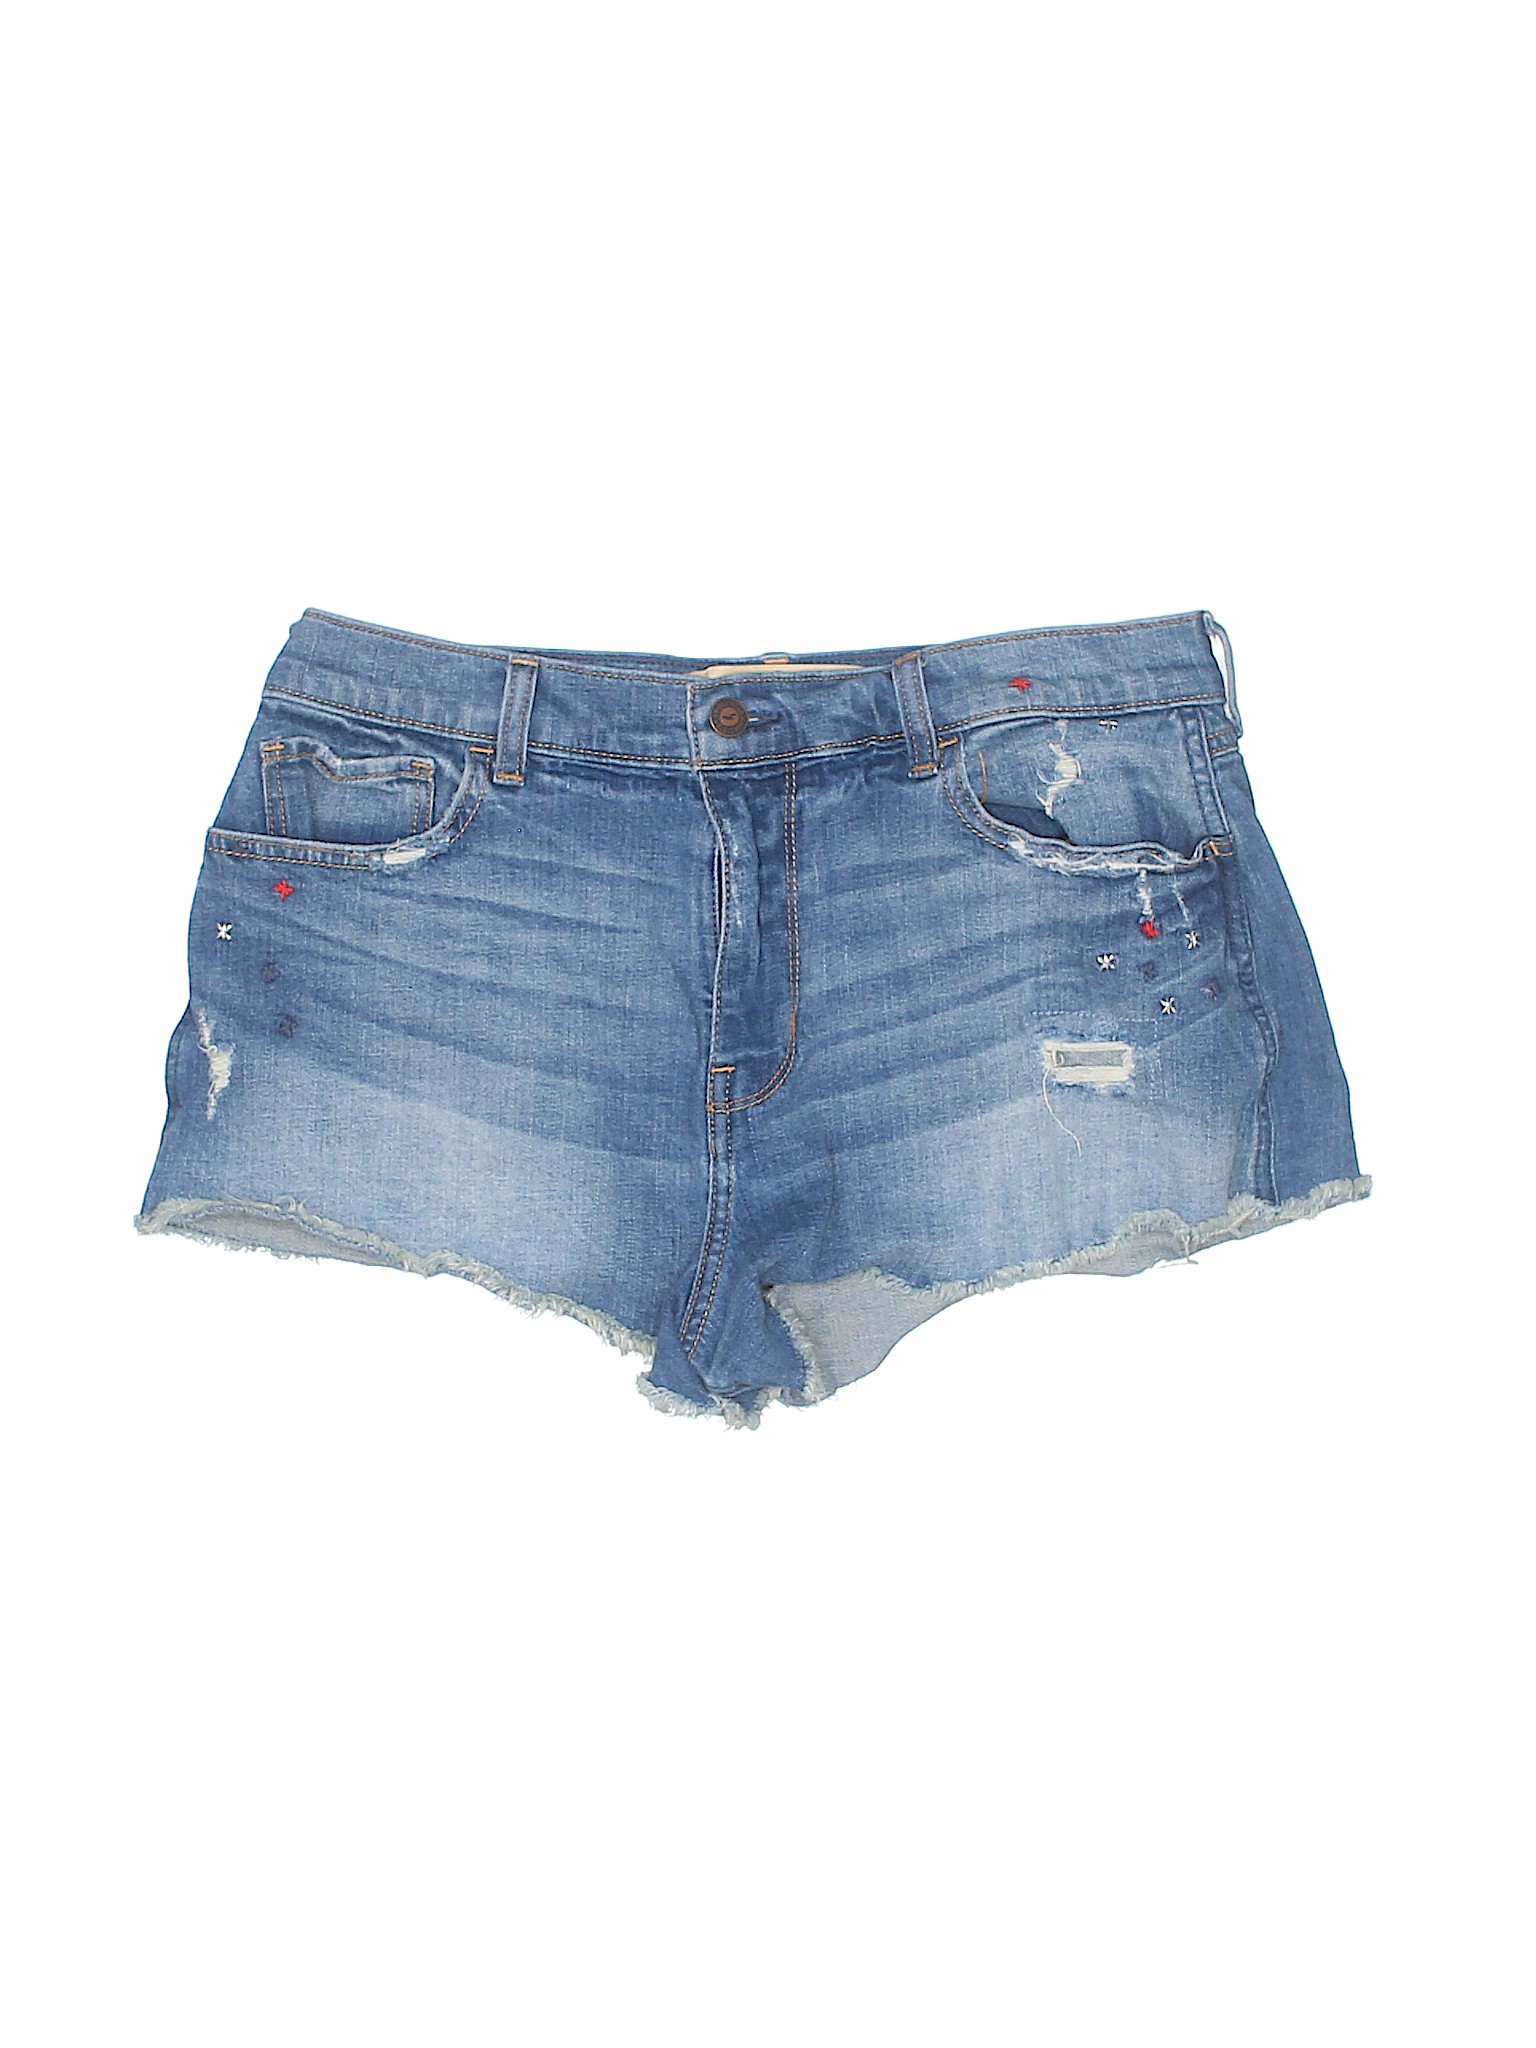 Hollister Solid Blue Denim Shorts Size 13 - 90% off | thredUP